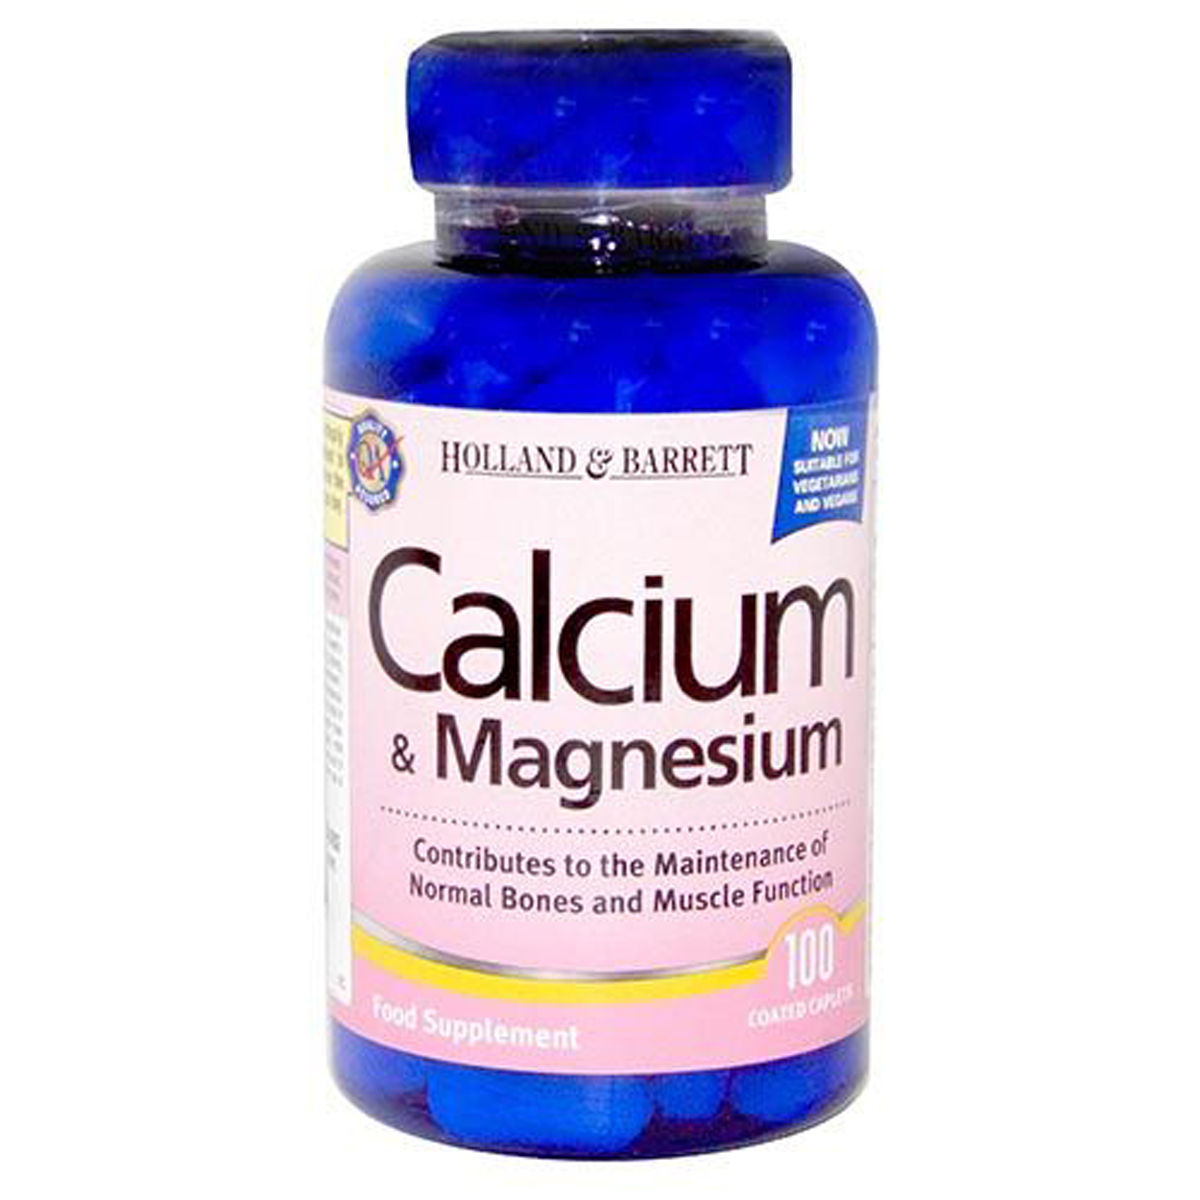 Buy Holland & Barrett Calcium & Magnesium, 100 Capsules Online